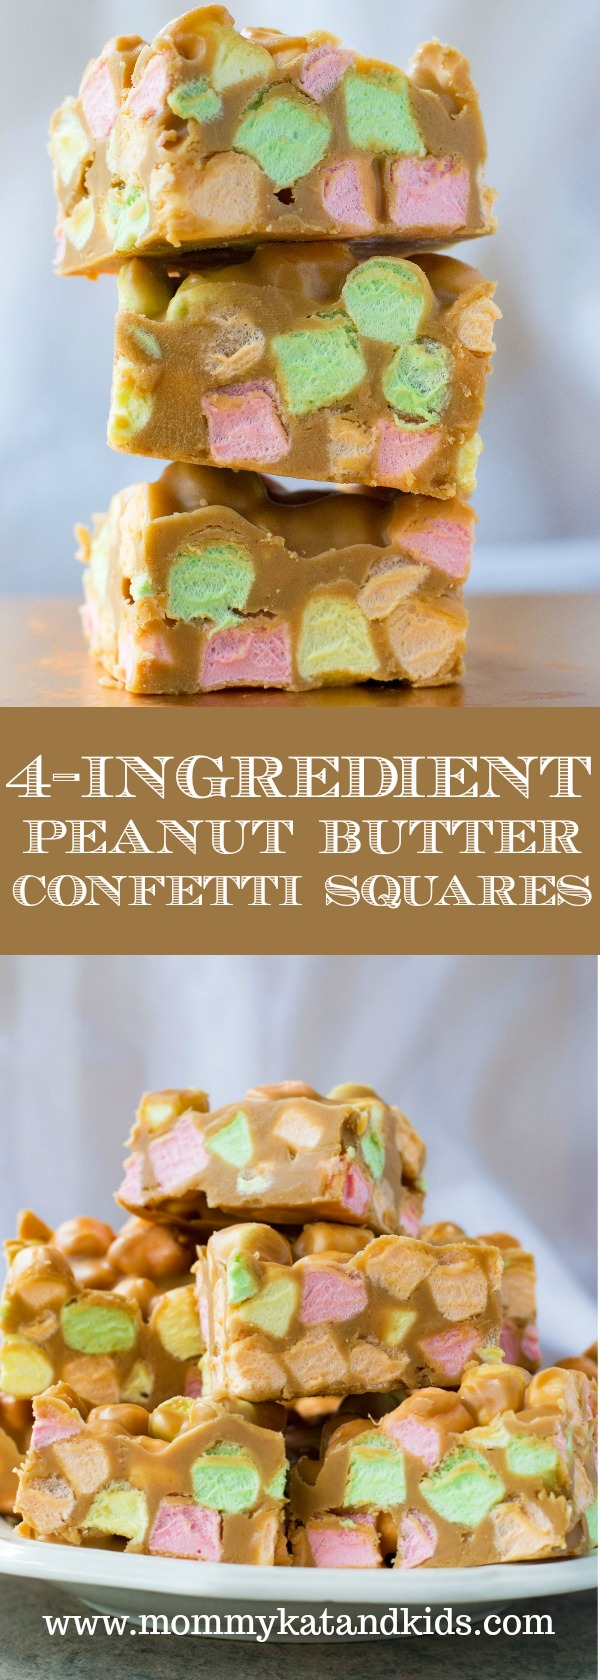 peanut butter confetti squares